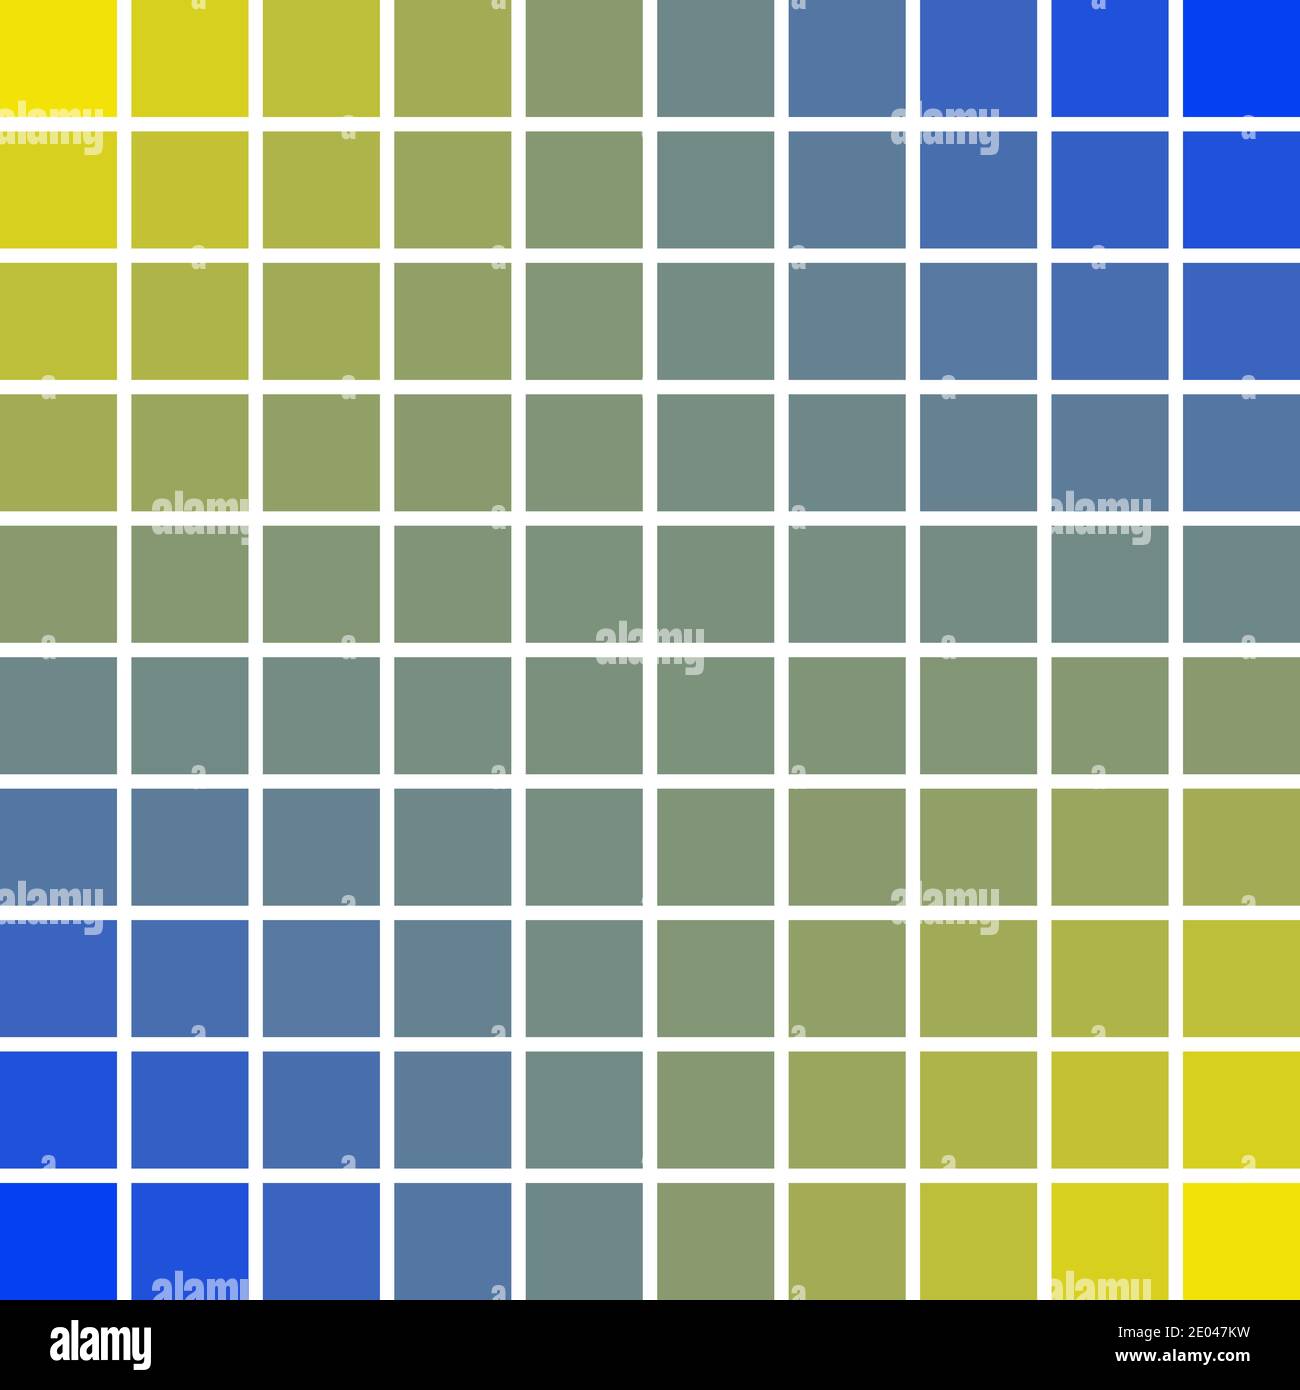 Paneles pixel art cuadrados 10 x 10 color azul y amarillo de las olas del sol y del mar, ilustración vectorial pixel art colores paz buena y prosperidad. Ilustración del Vector